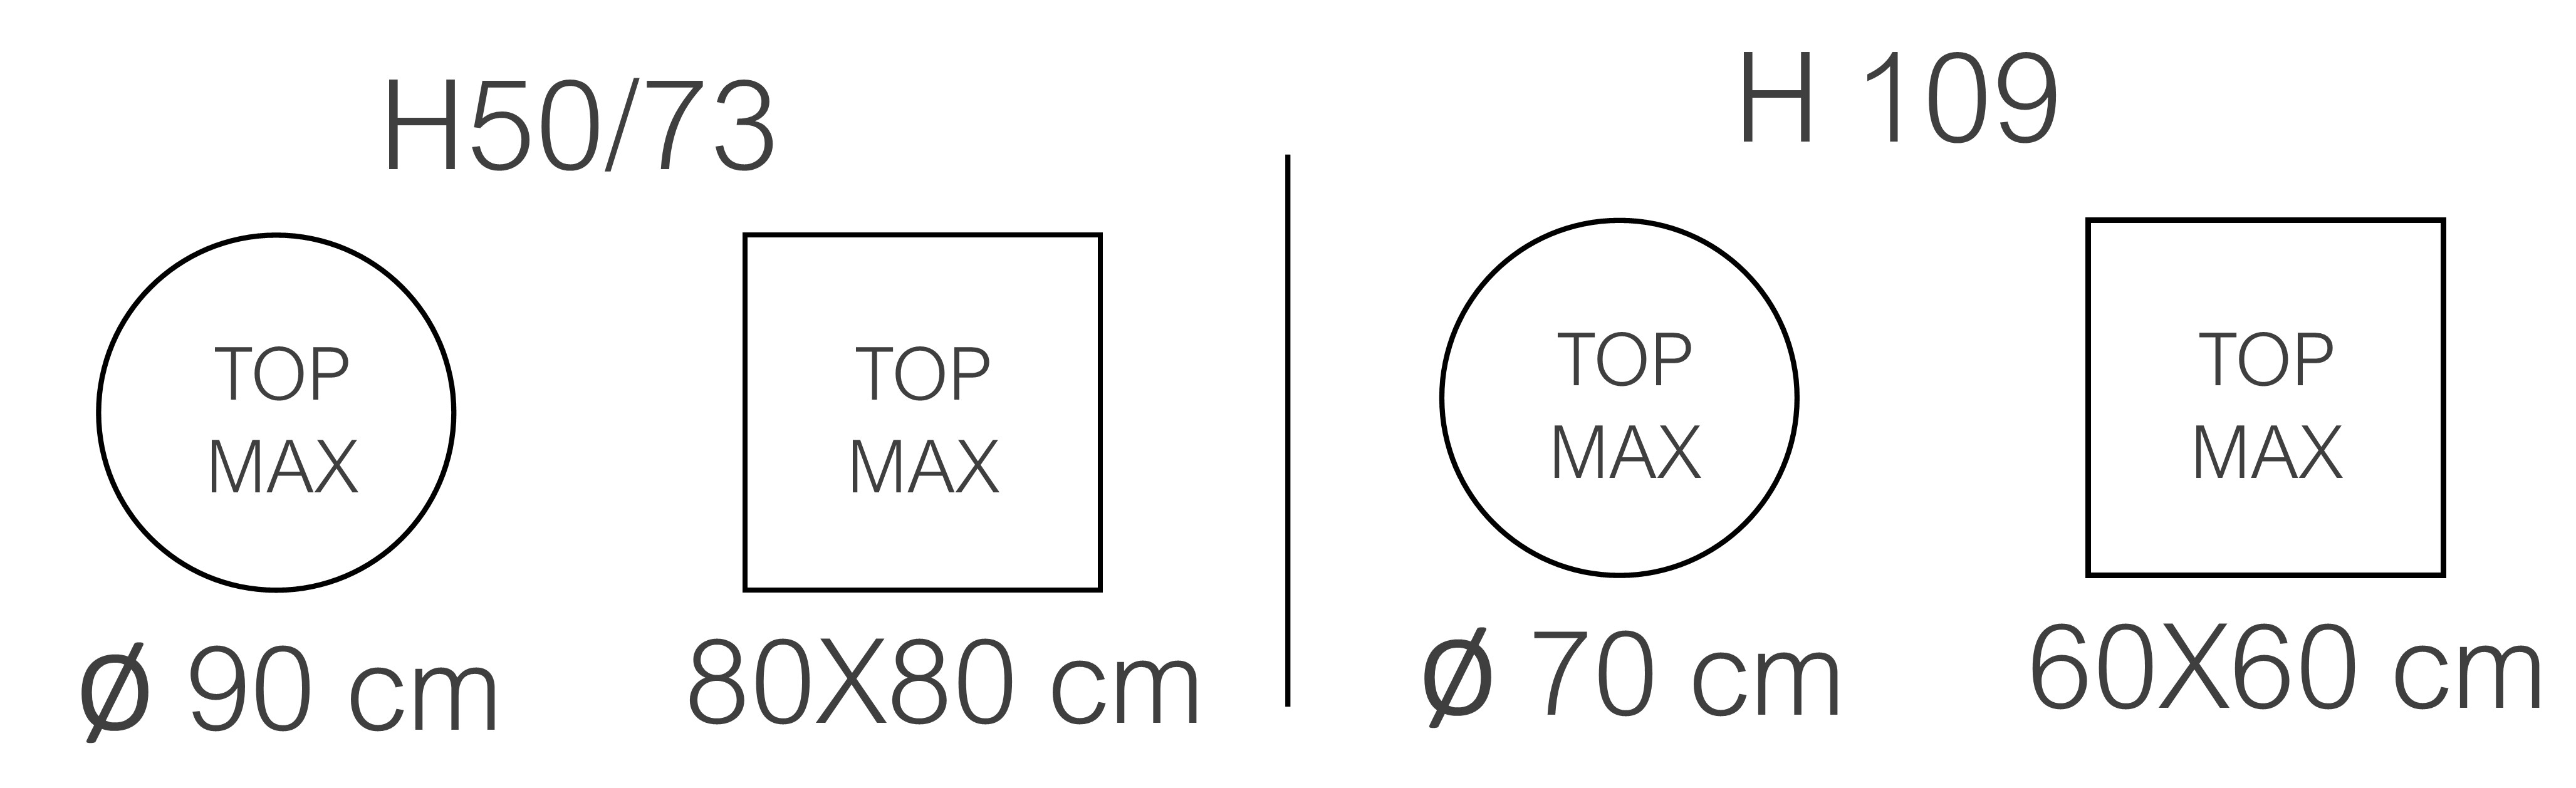 MAX TOP COLONNA 50.jpg